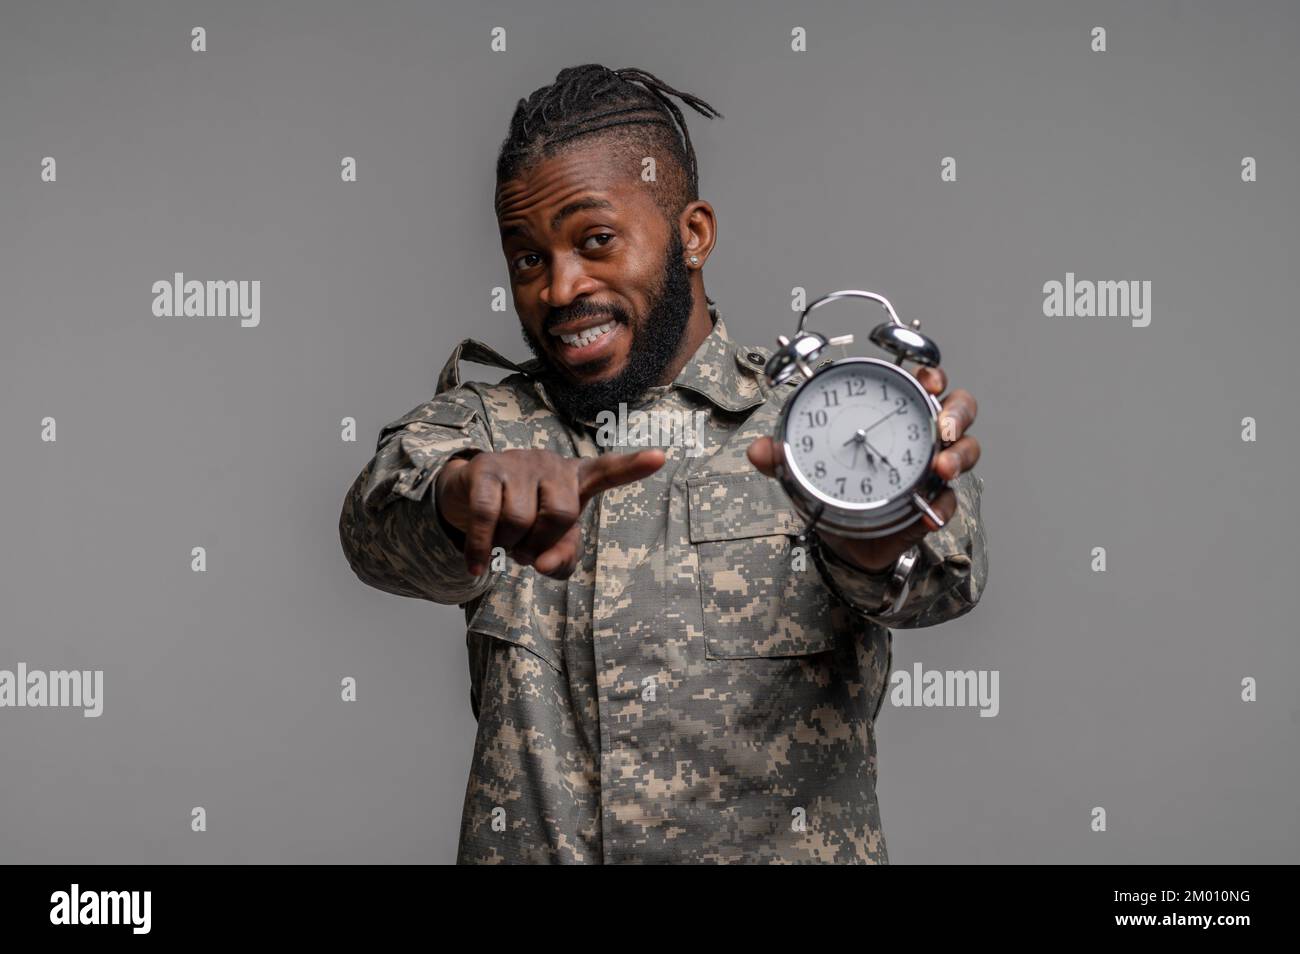 Hüftporträt eines jungen Soldaten, der eine Uhr hält und mit dem Zeigefinger nach vorne zeigt. Stockfoto